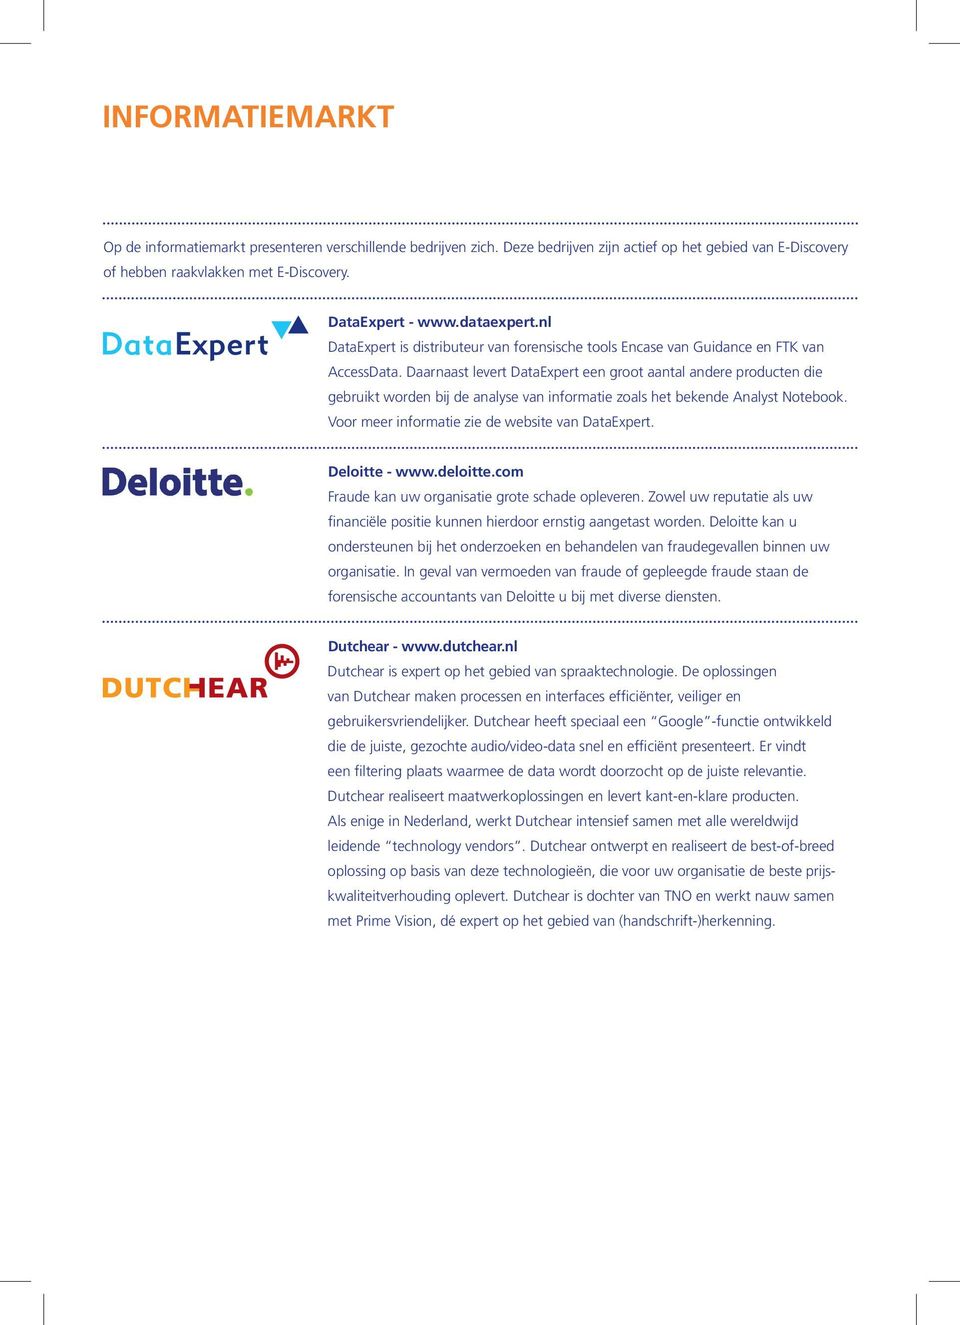 Daarnaast levert DataExpert een groot aantal andere producten die gebruikt worden bij de analyse van informatie zoals het bekende Analyst Notebook. Voor meer informatie zie de website van DataExpert.